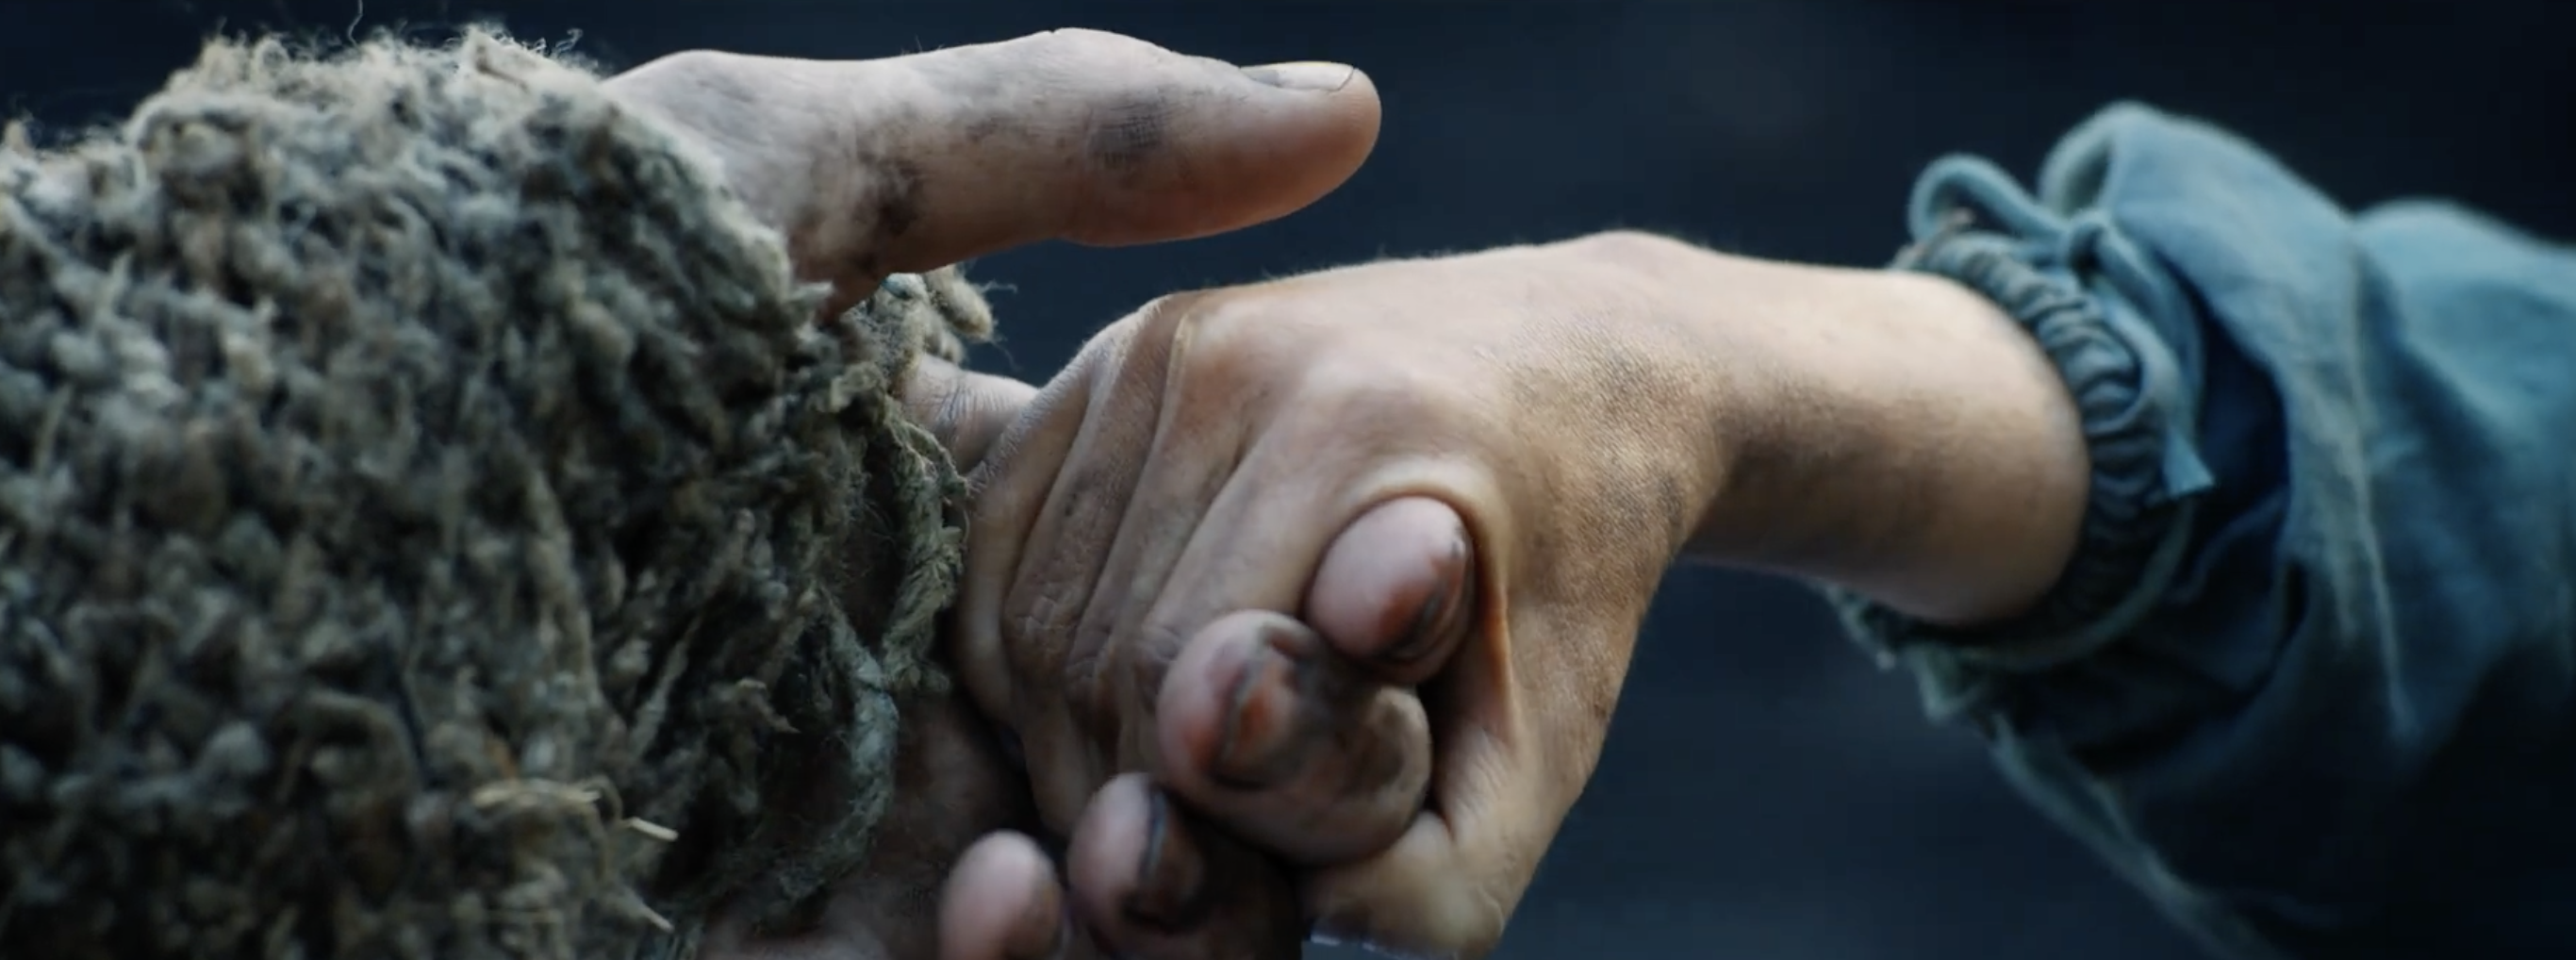 Uma mão pequena segura os dedos de uma mão maior na nova série 'Os Anéis de Poder'